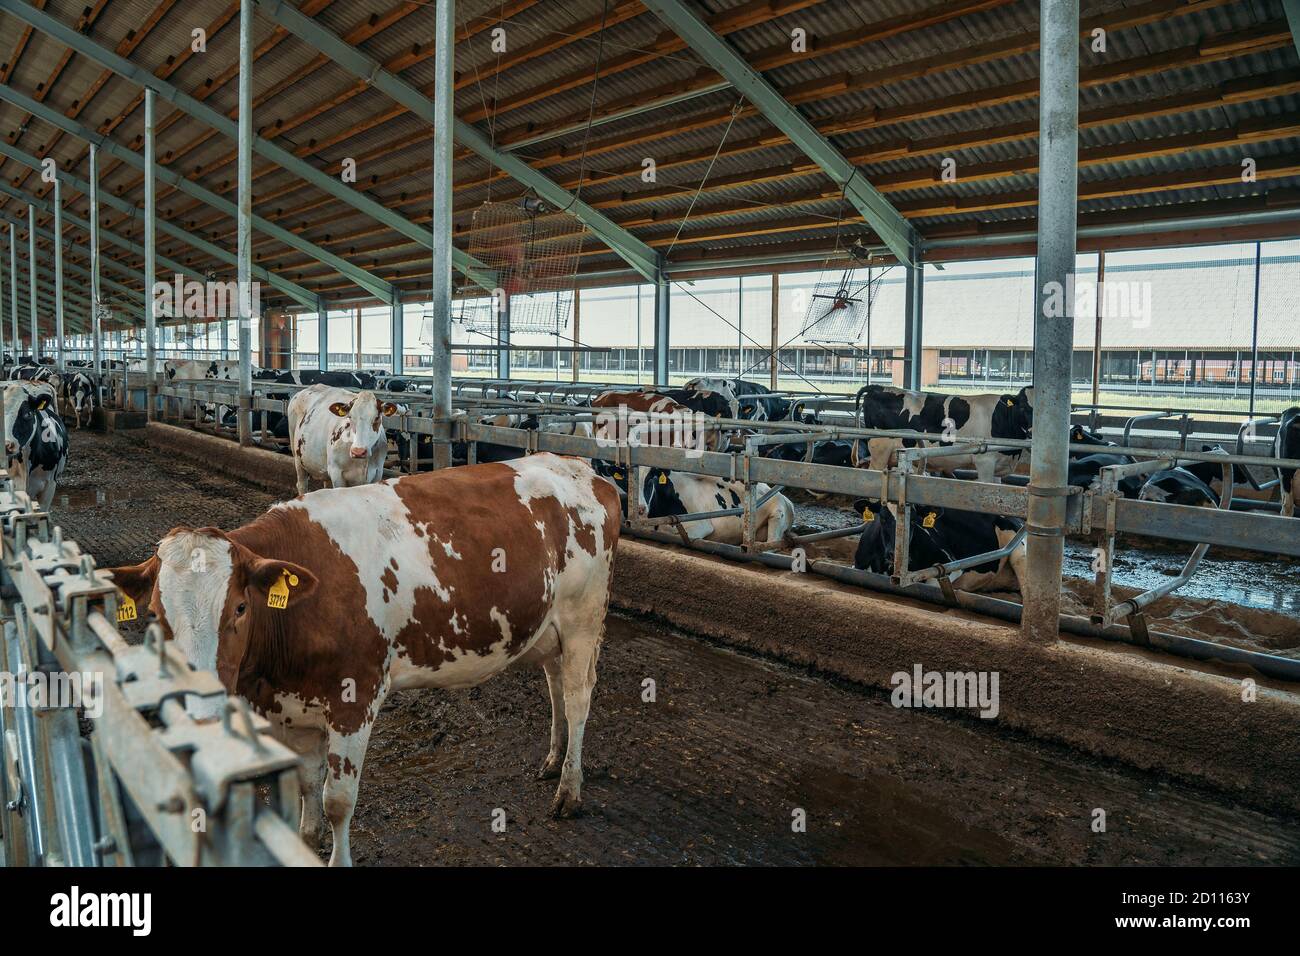 Les vaches mangent du foin dans la ferme laitière, dans le bassin de cowshed, production industrielle de lait Banque D'Images